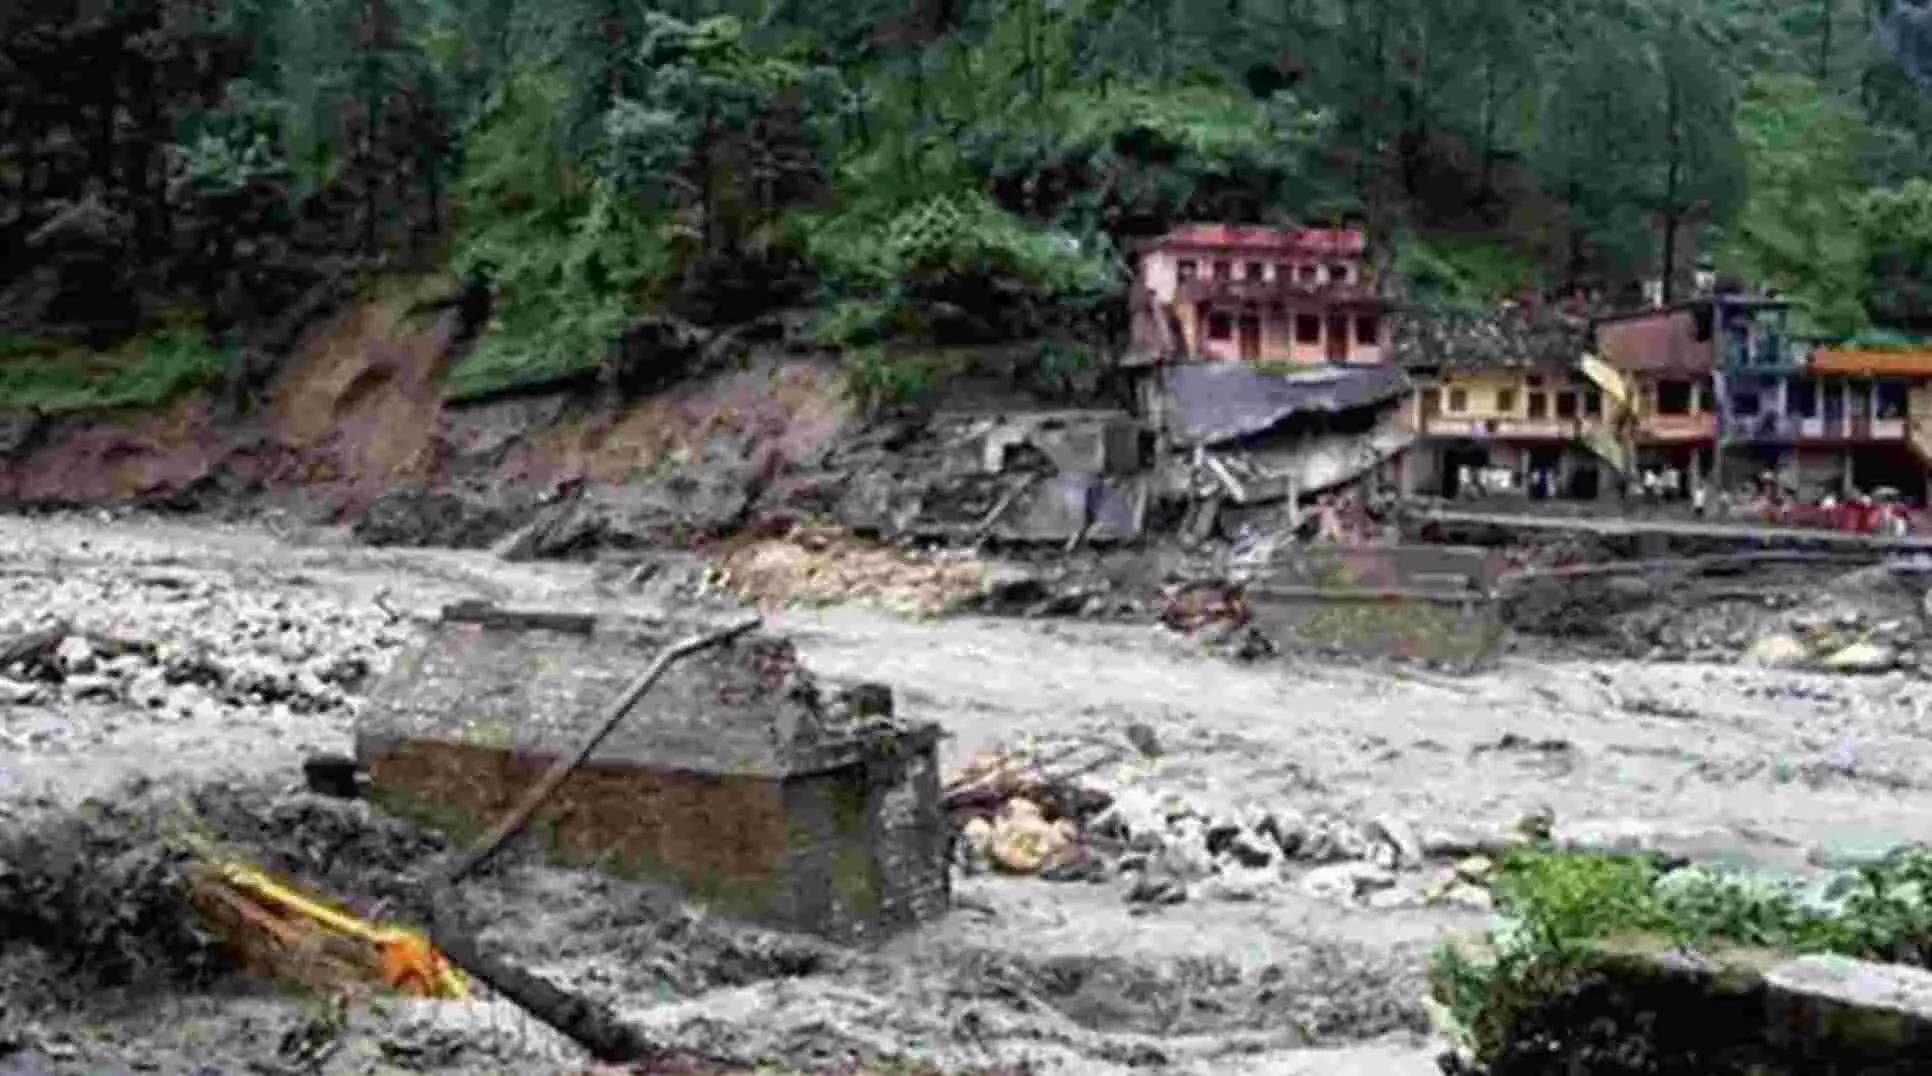 हिमाचल के लाहौल में बादल फटने से 1 व्यक्ति की मौत, 10 लोग लापता; रेस्क्यू ऑपरेशन जारी